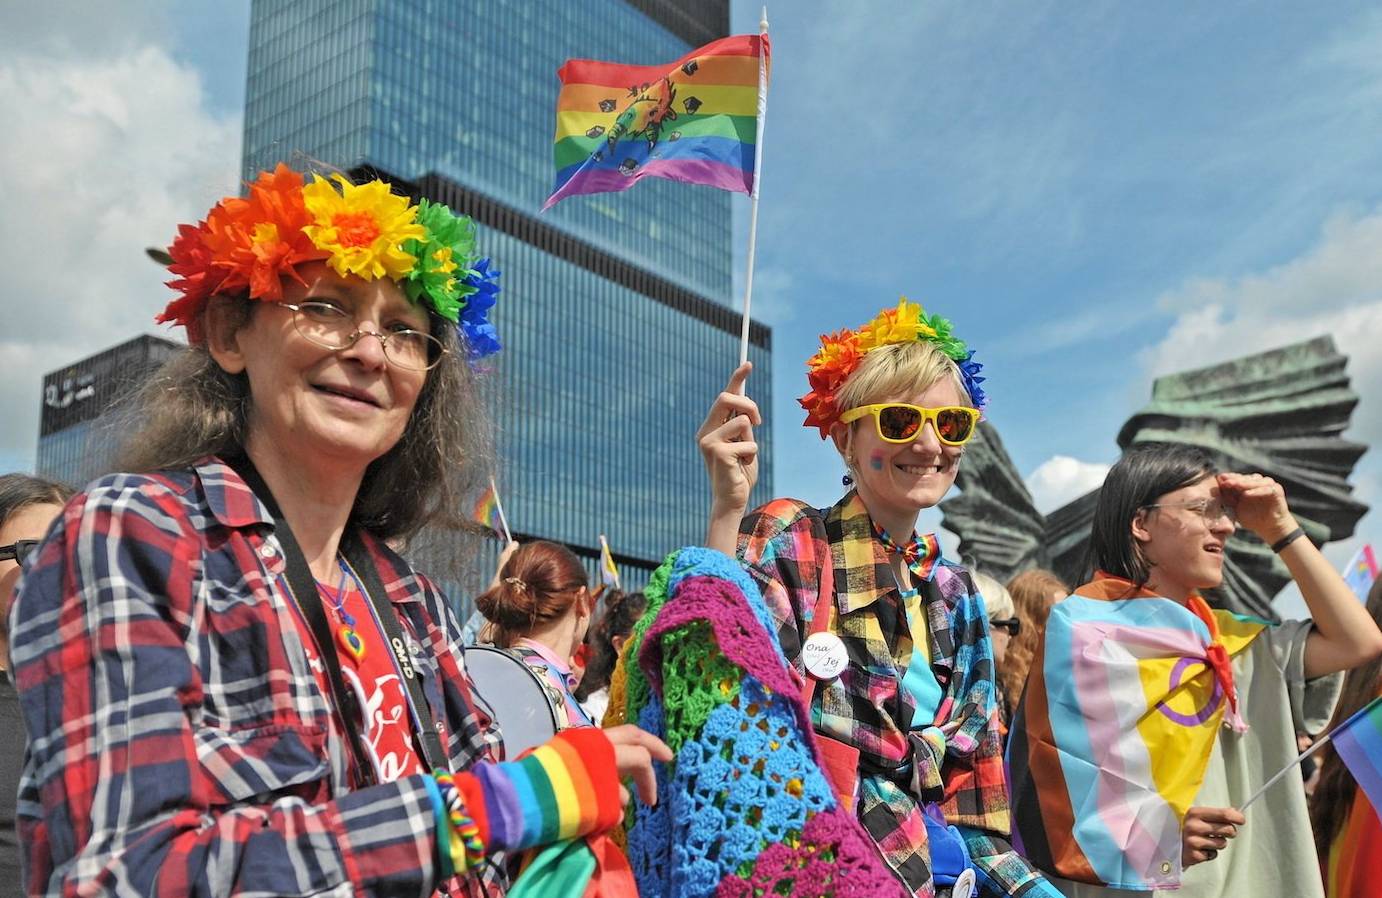 Uczestniczki parady równości w Katowicach, ubrane w kolorowe ubrania, niosą tęczowe flagi i uśmiechają się